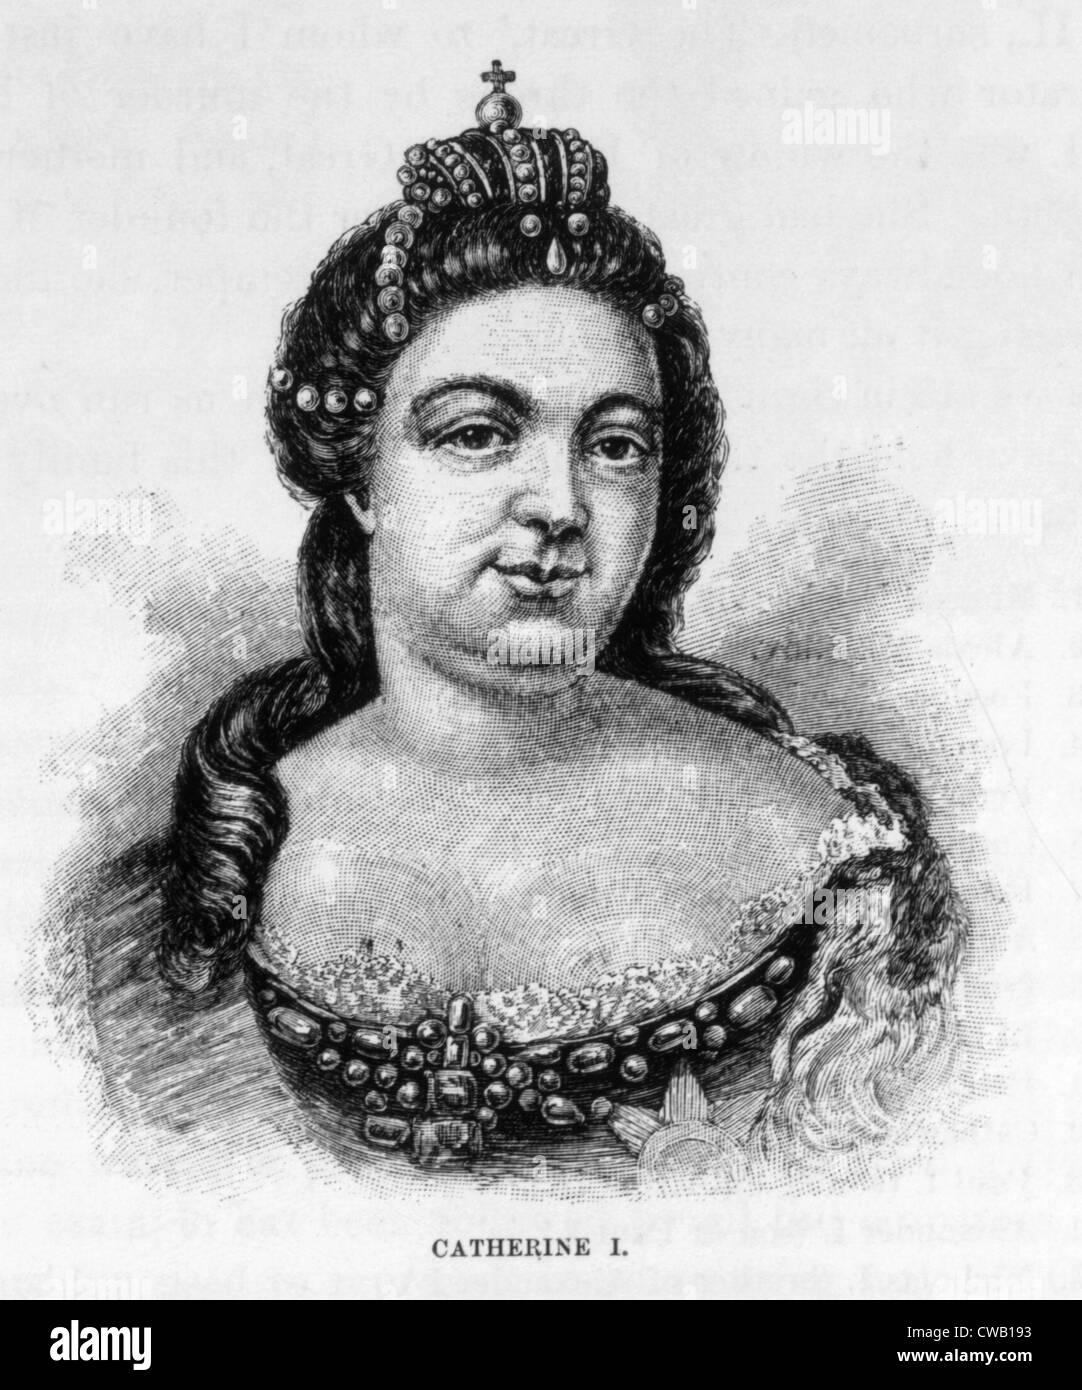 Zarin Catherine ich (ca. 1683-1727), Zarin von Russland (1725-1727), 1886 Gravur Stockfoto